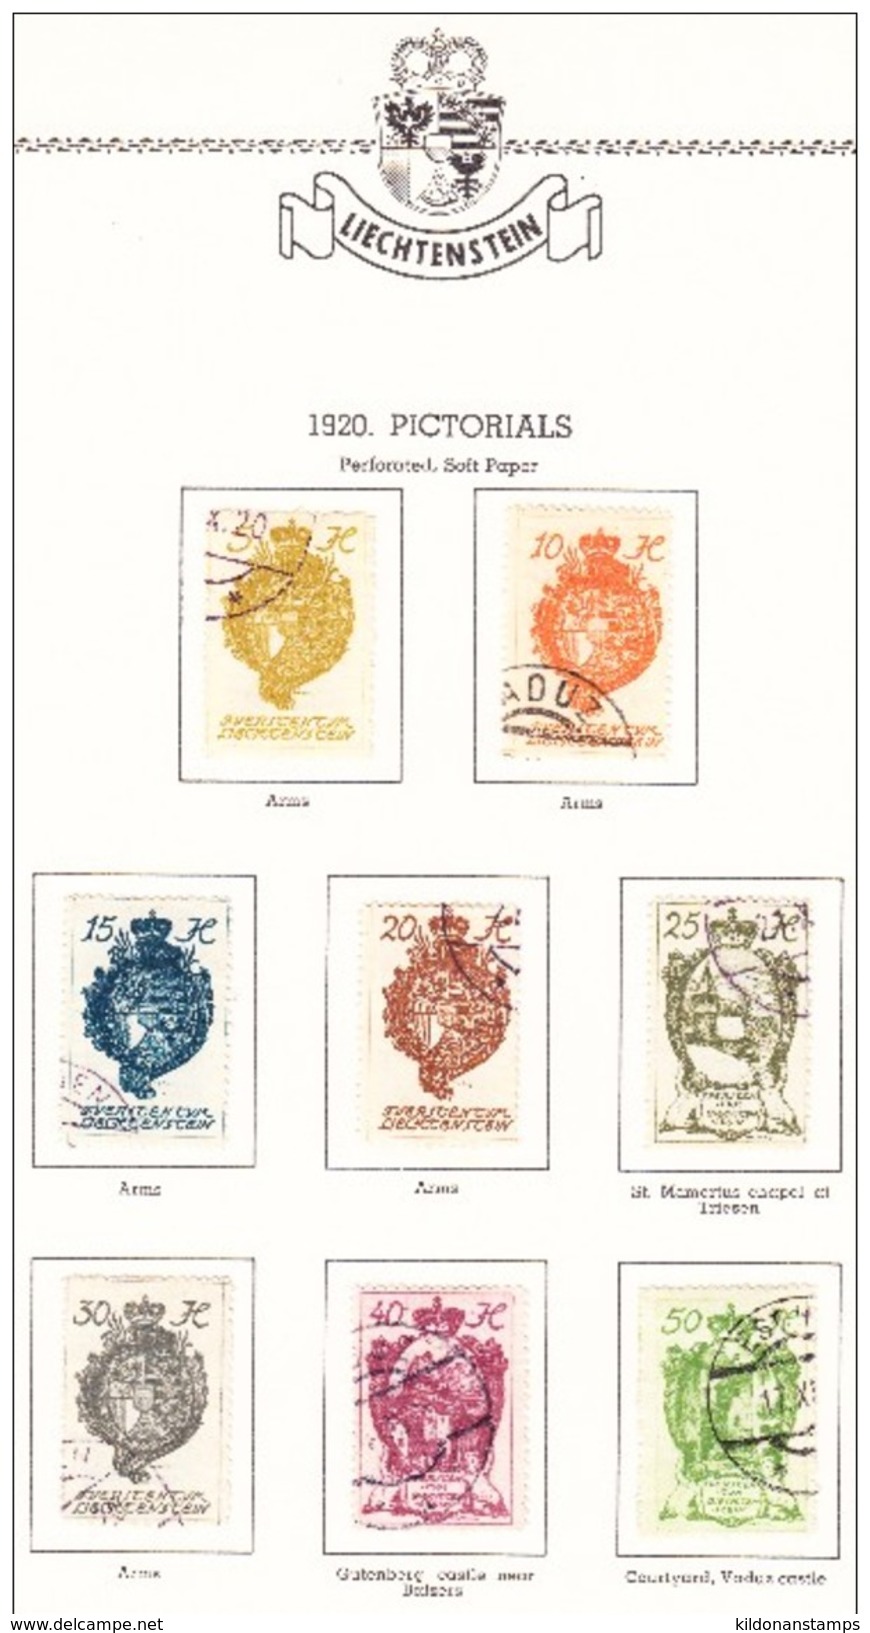 Liechtenstein 1912-66 cancelled collection, Minkus album & pages, Sc# see notes